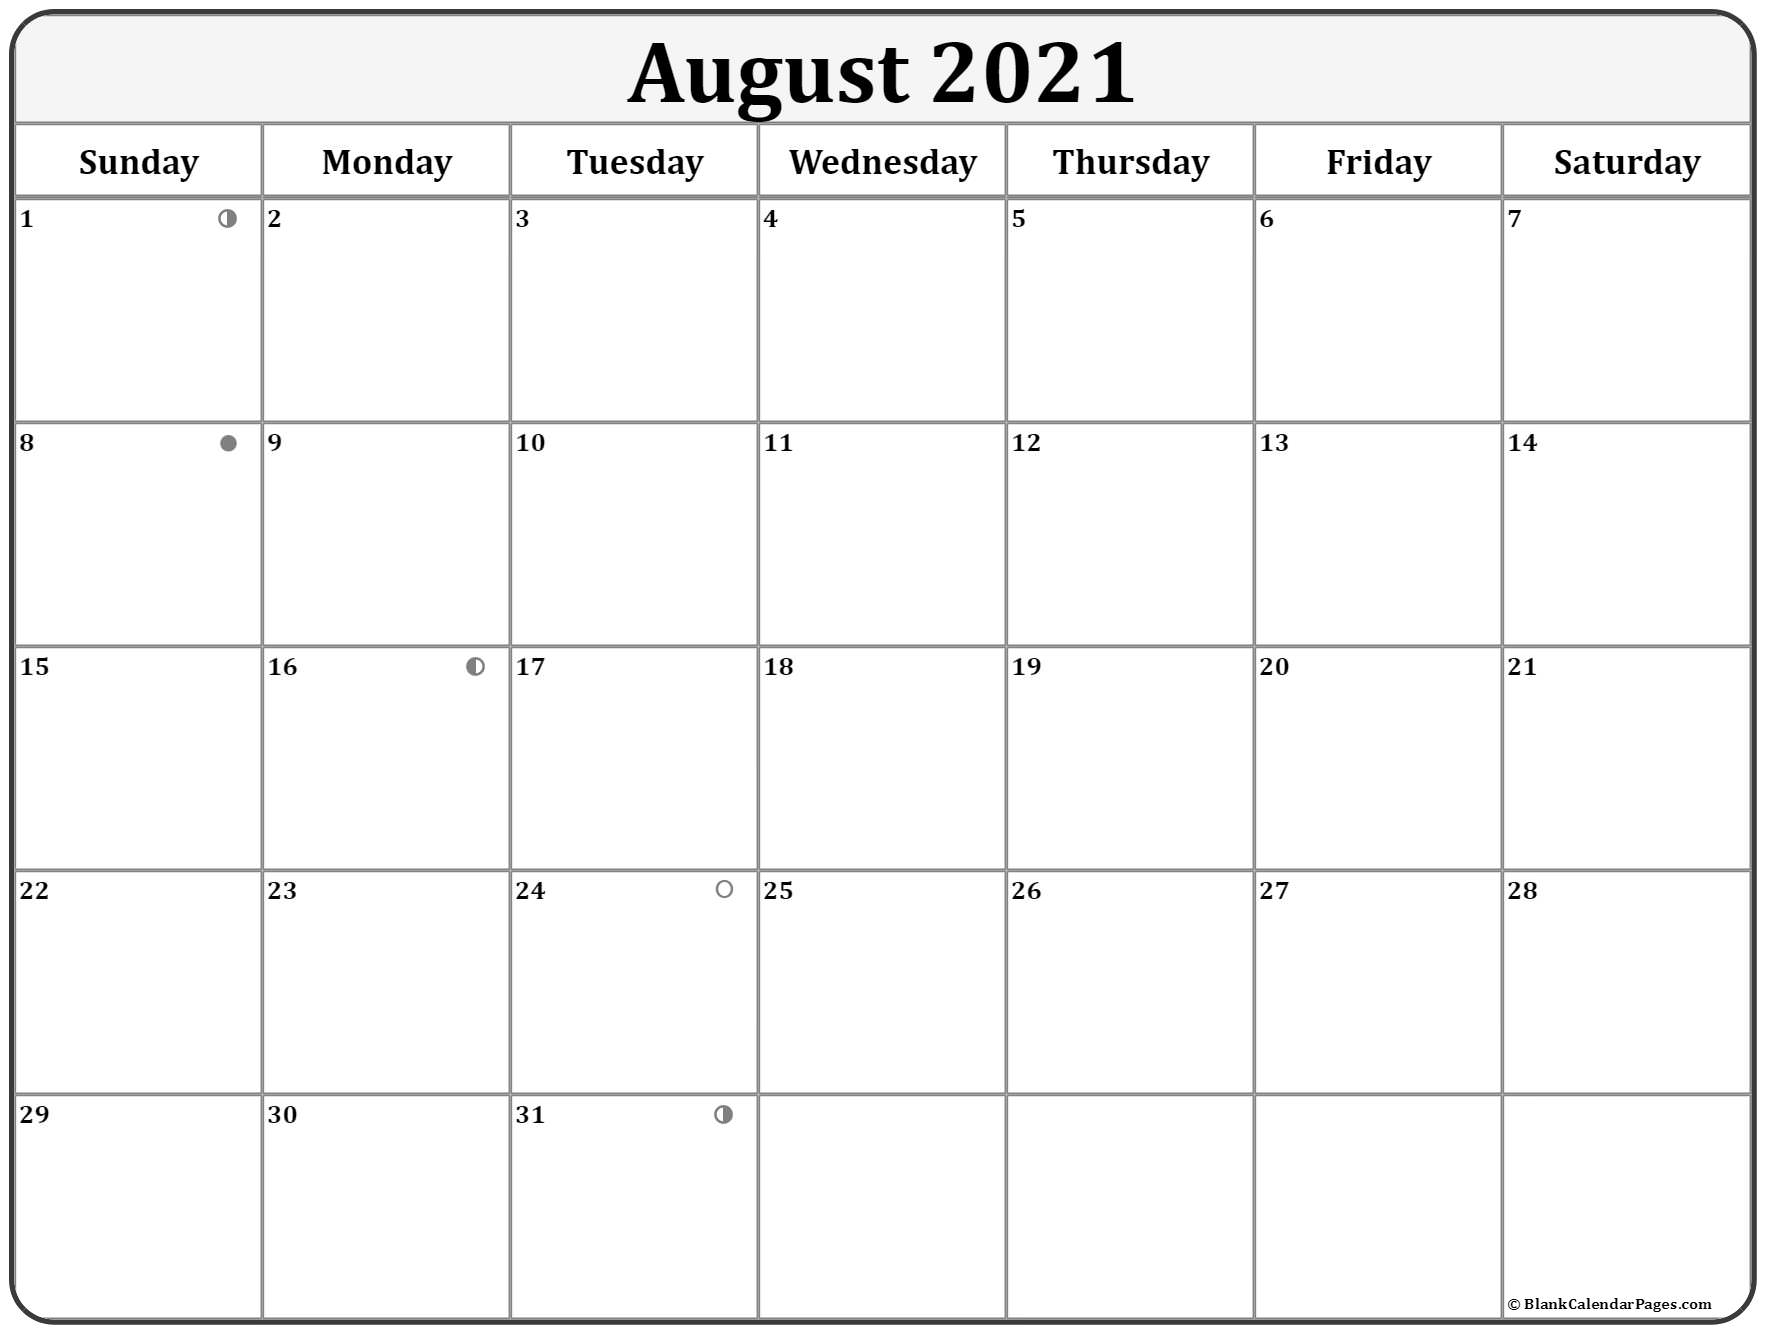 Collect Fishing Lunar Calendar August 2021